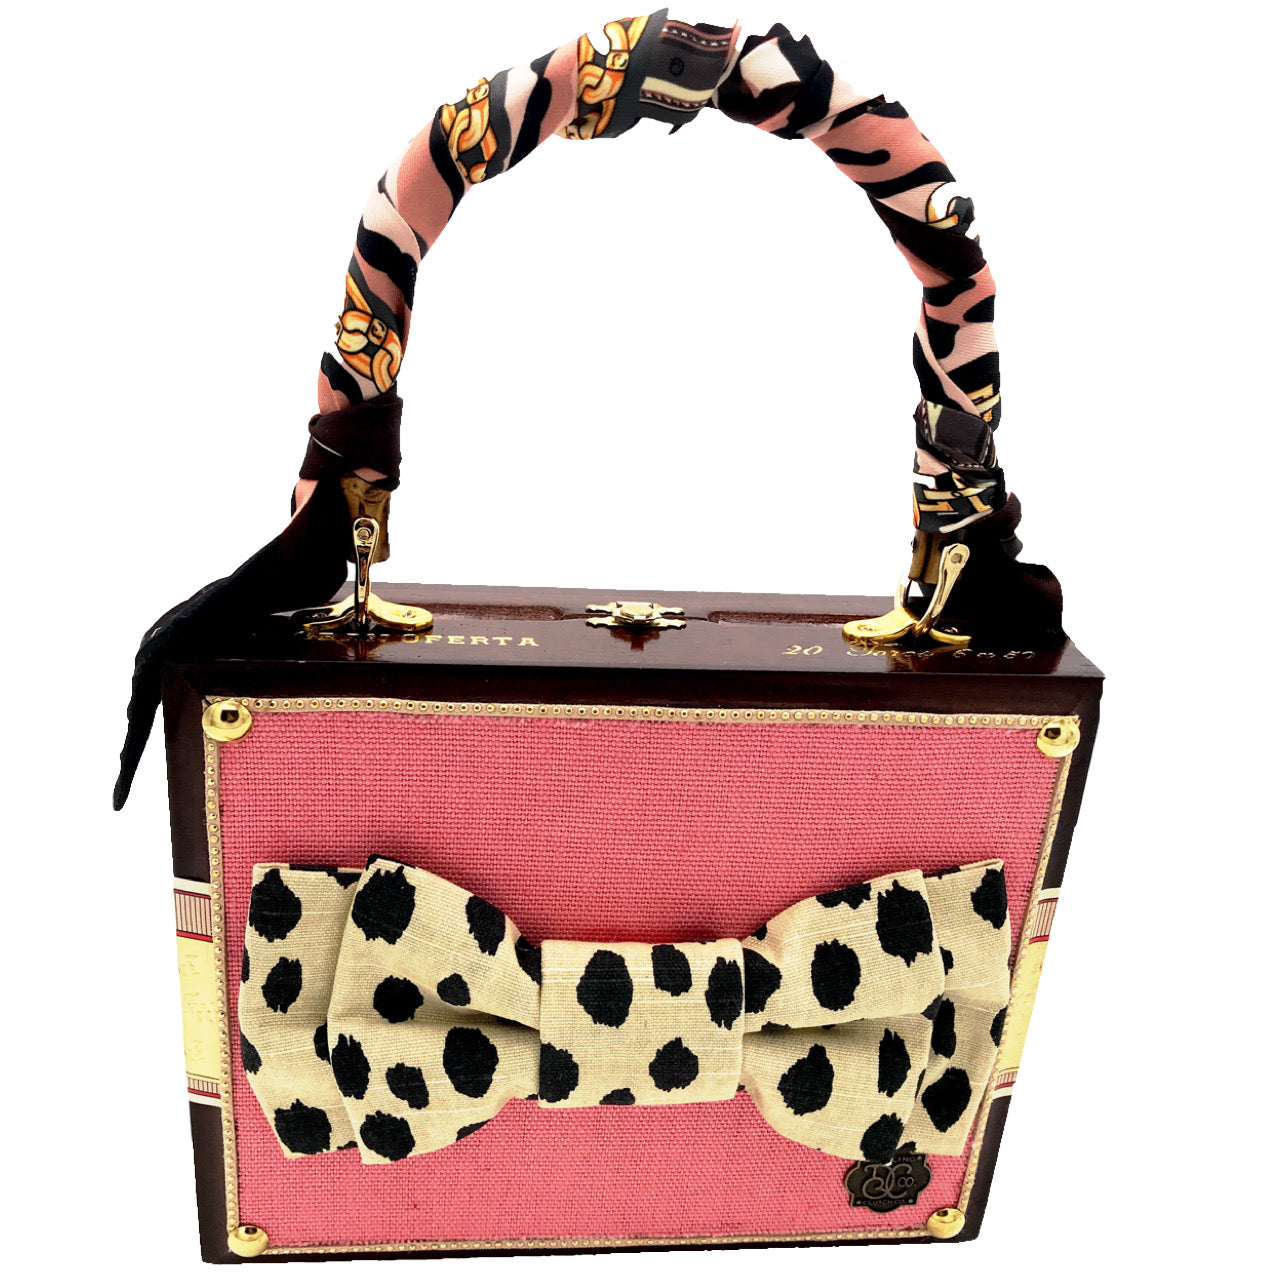 Chelsea Cheetah Bag